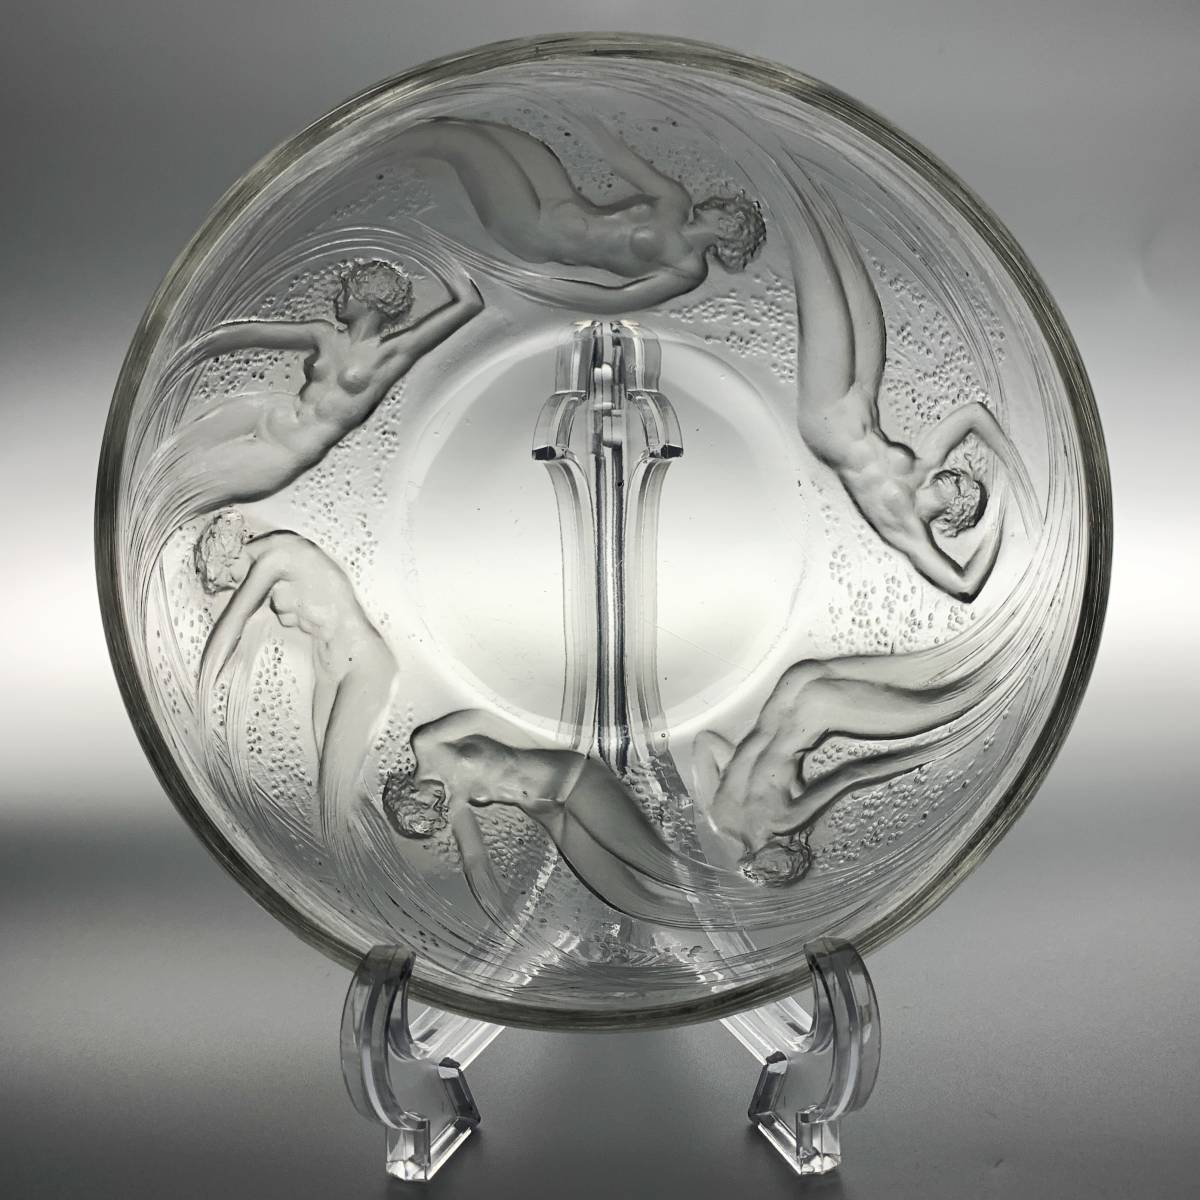 【貴重】ルネ・ラリック オンディーヌ ボウル R.LALIQUE「ONDINES」Bowl 水の精達 精霊 1921年 アンティーク アールデコ フランス 西洋美術